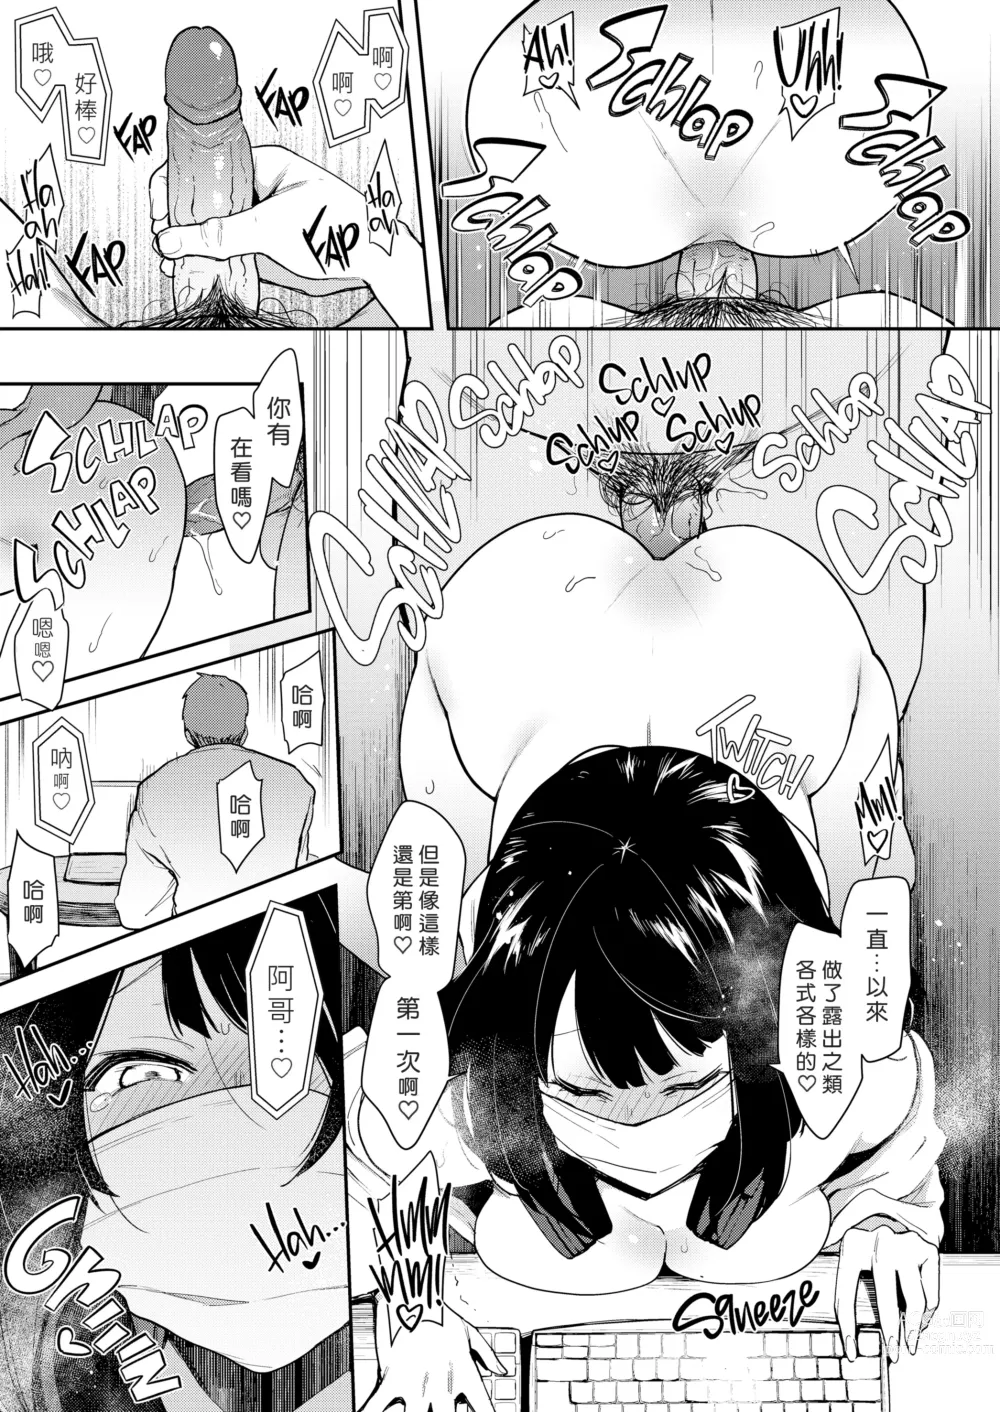 Page 23 of doujinshi Chouko I~V